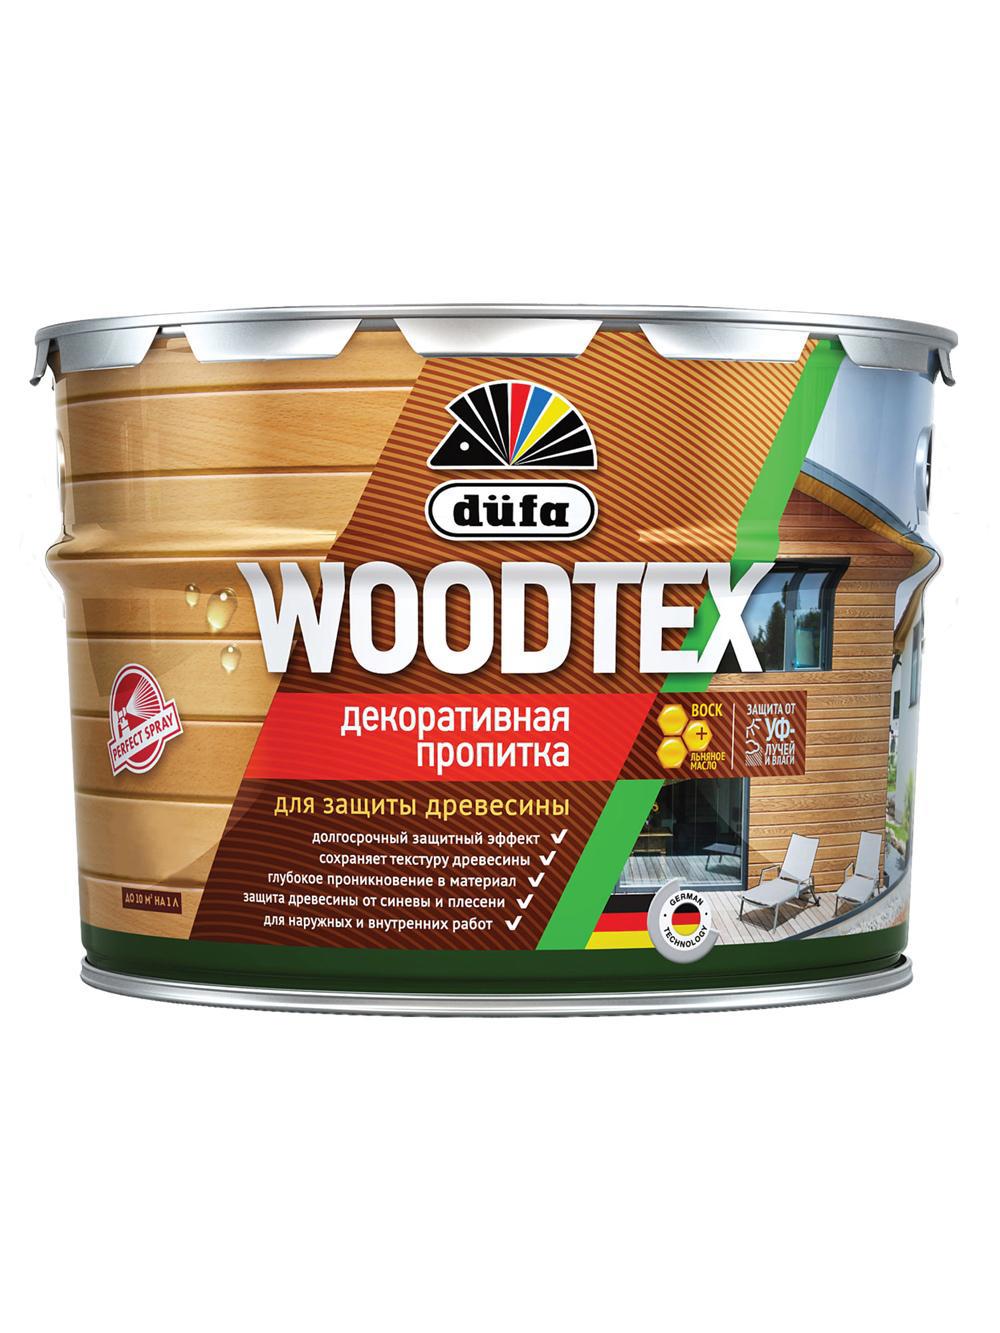 90194556 Пропитка декоративная для защиты древесины алкидная Woodtex тик 3 л STLM-0128487 DUFA